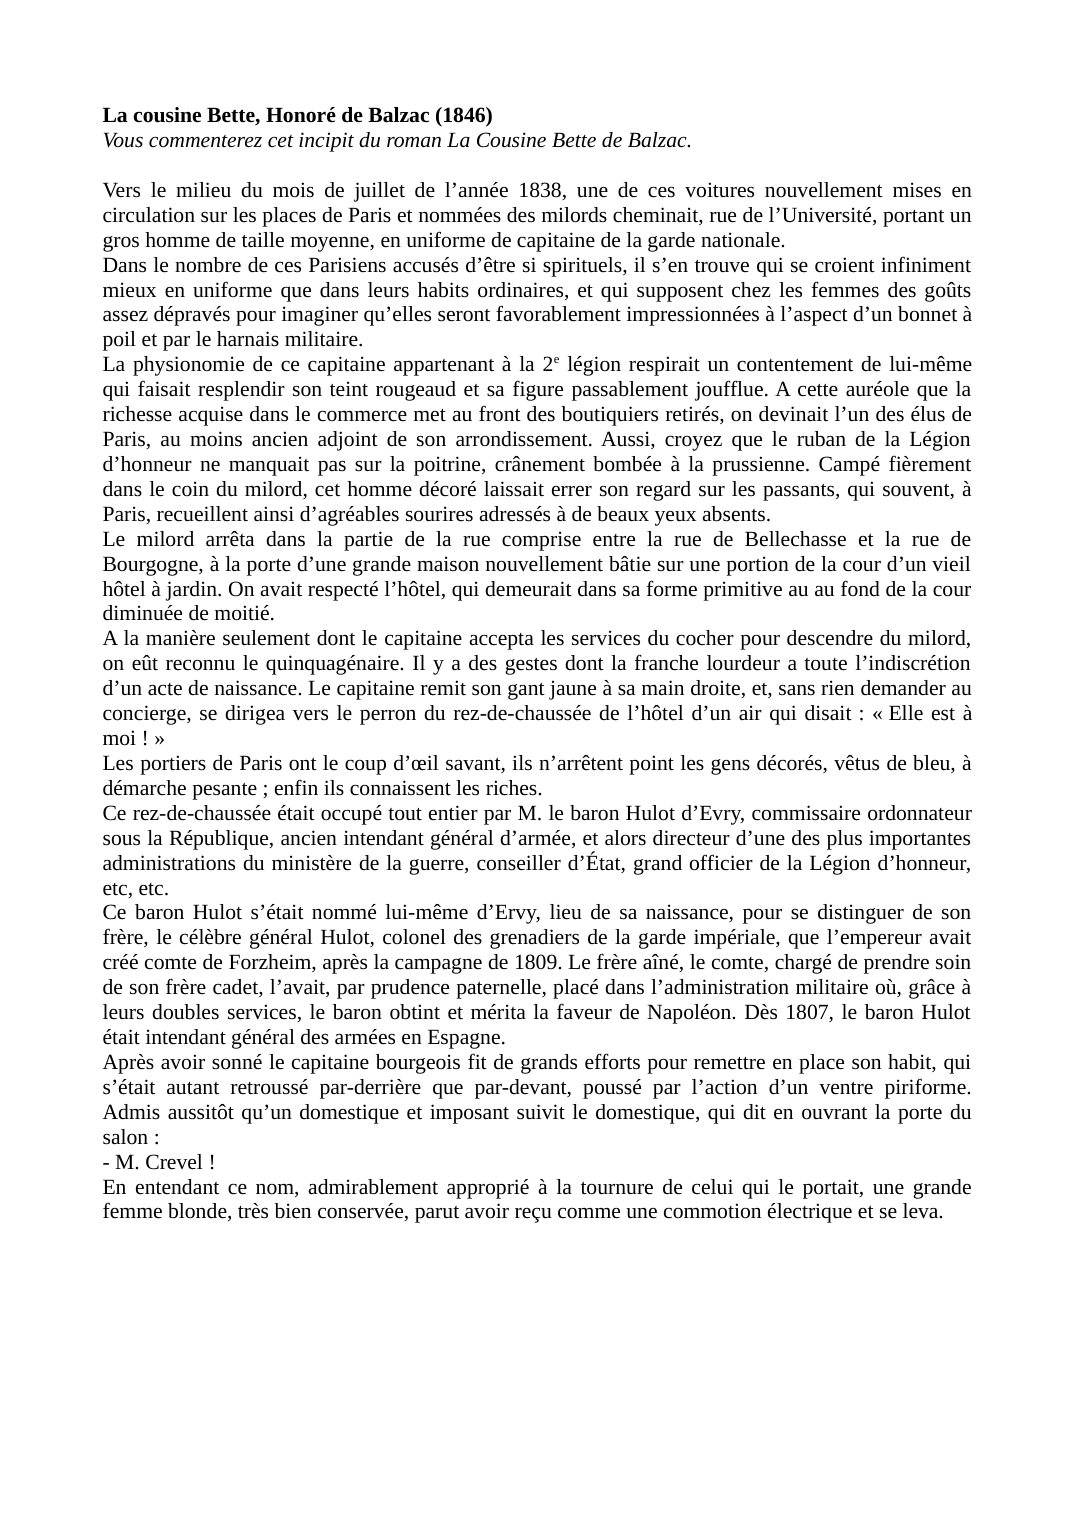 Prévisualisation du document Plan détaillé de l'incipit La Cousine Bette et informations sur le commentaire d'un incipit romanesque.